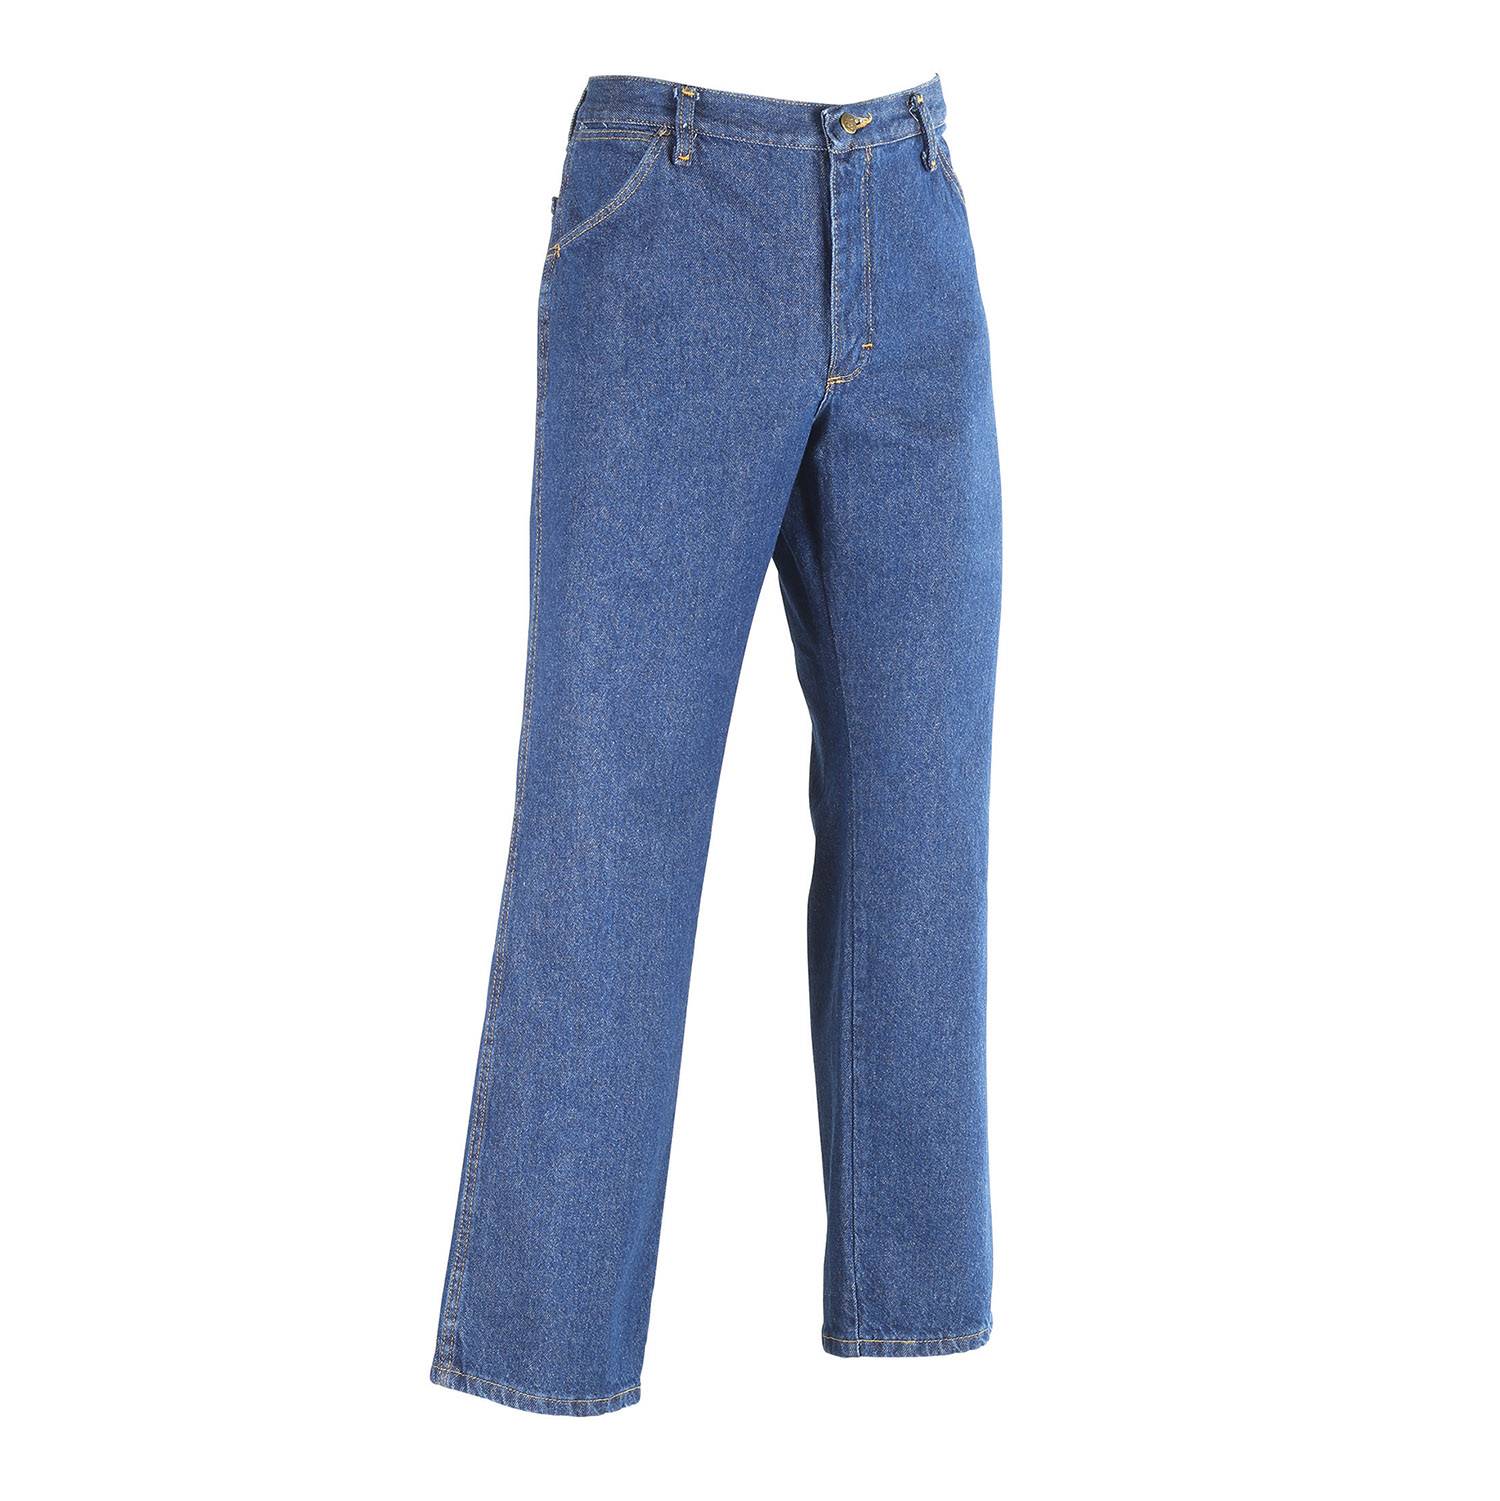 Red Kap Men's Pre-Washed Indigo Denim Jeans